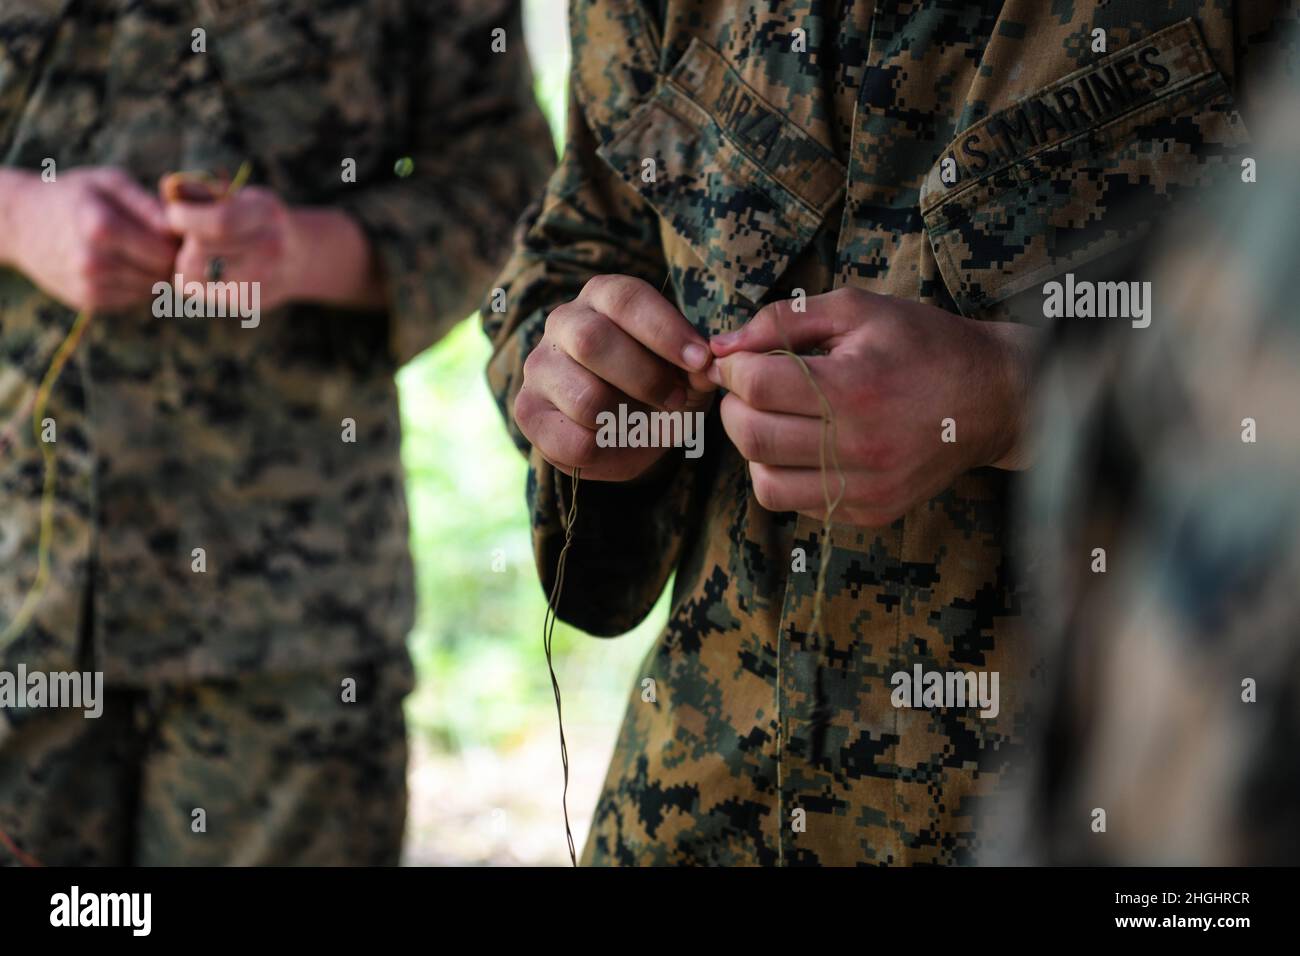 U.S. Marines with Bridge Company, 3rd Engineer Support Batallón, 9th Marine Logistics Group, prueba cables como parte de un entrenamiento dirigido por el Ejército Real Tailandés sobre cómo localizar y desarmar trampas de circuito abierto durante el ejercicio Cobra Gold 21 en el área de entrenamiento de Ta Mor Roi en la provincia de Surin, Tailandia, 6 de agosto de 2021. Las Fuerzas Armadas Reales de Tailandia y Estados Unidos trabajaron juntas durante el ejercicio para llevar a cabo operaciones de eliminación de minas terrestres, capacitación en procedimientos de seguridad y capacitación en respuesta médica asociada a traumas. Este ejercicio está alineado con el Programa de Acción Humanitaria contra las Minas del Departamento de Defensa de los Estados Unidos, que es el mismo Foto de stock